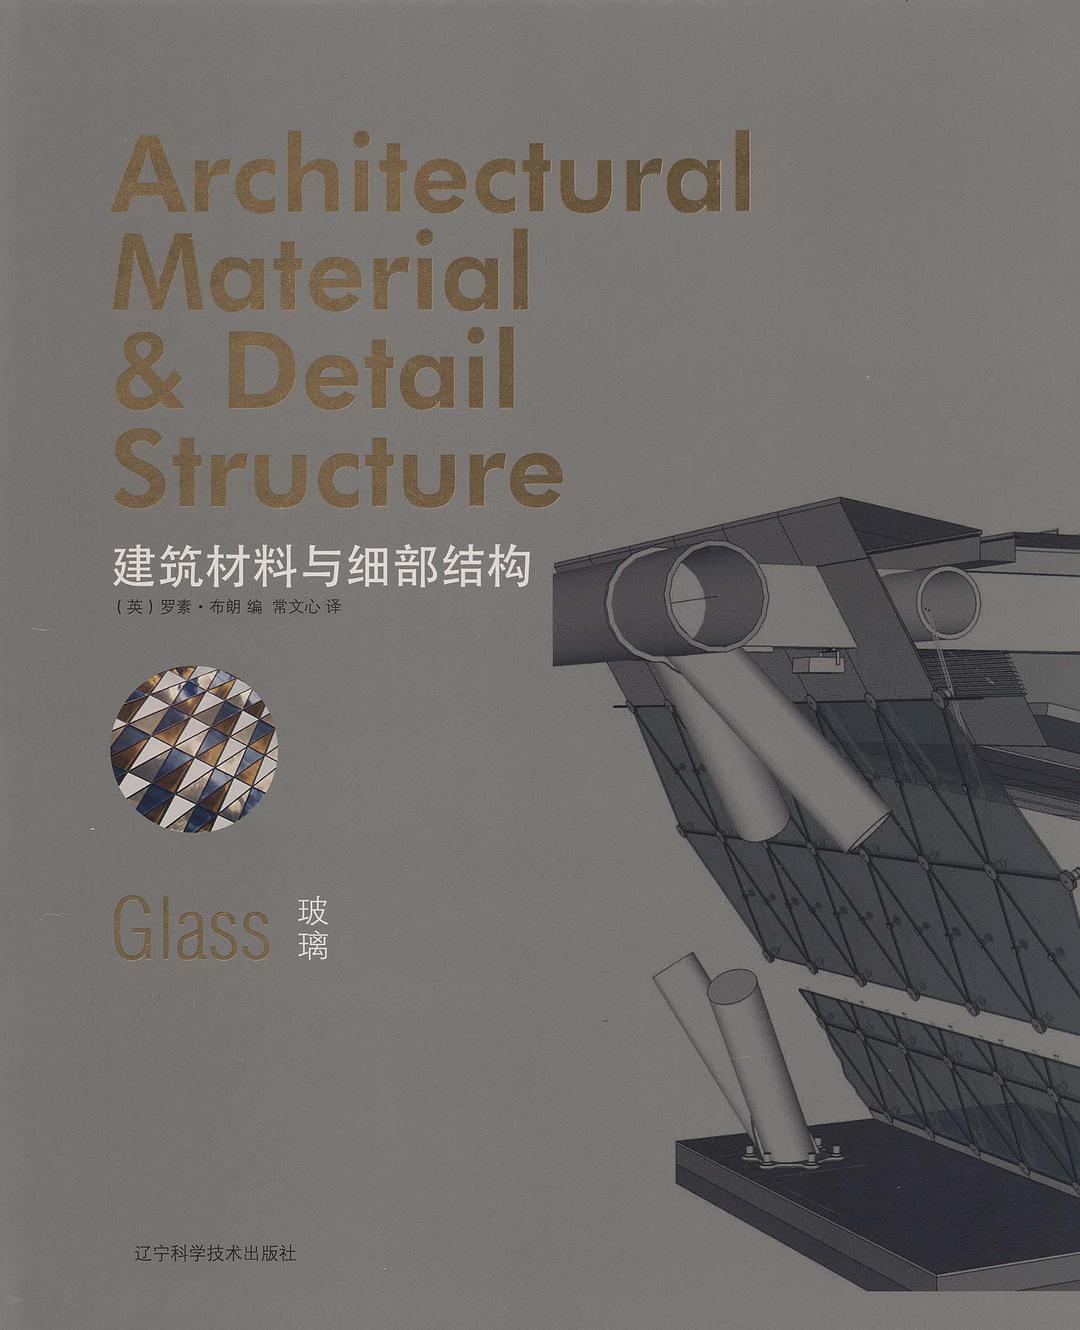 建筑材料与细部结构 玻璃 Glass